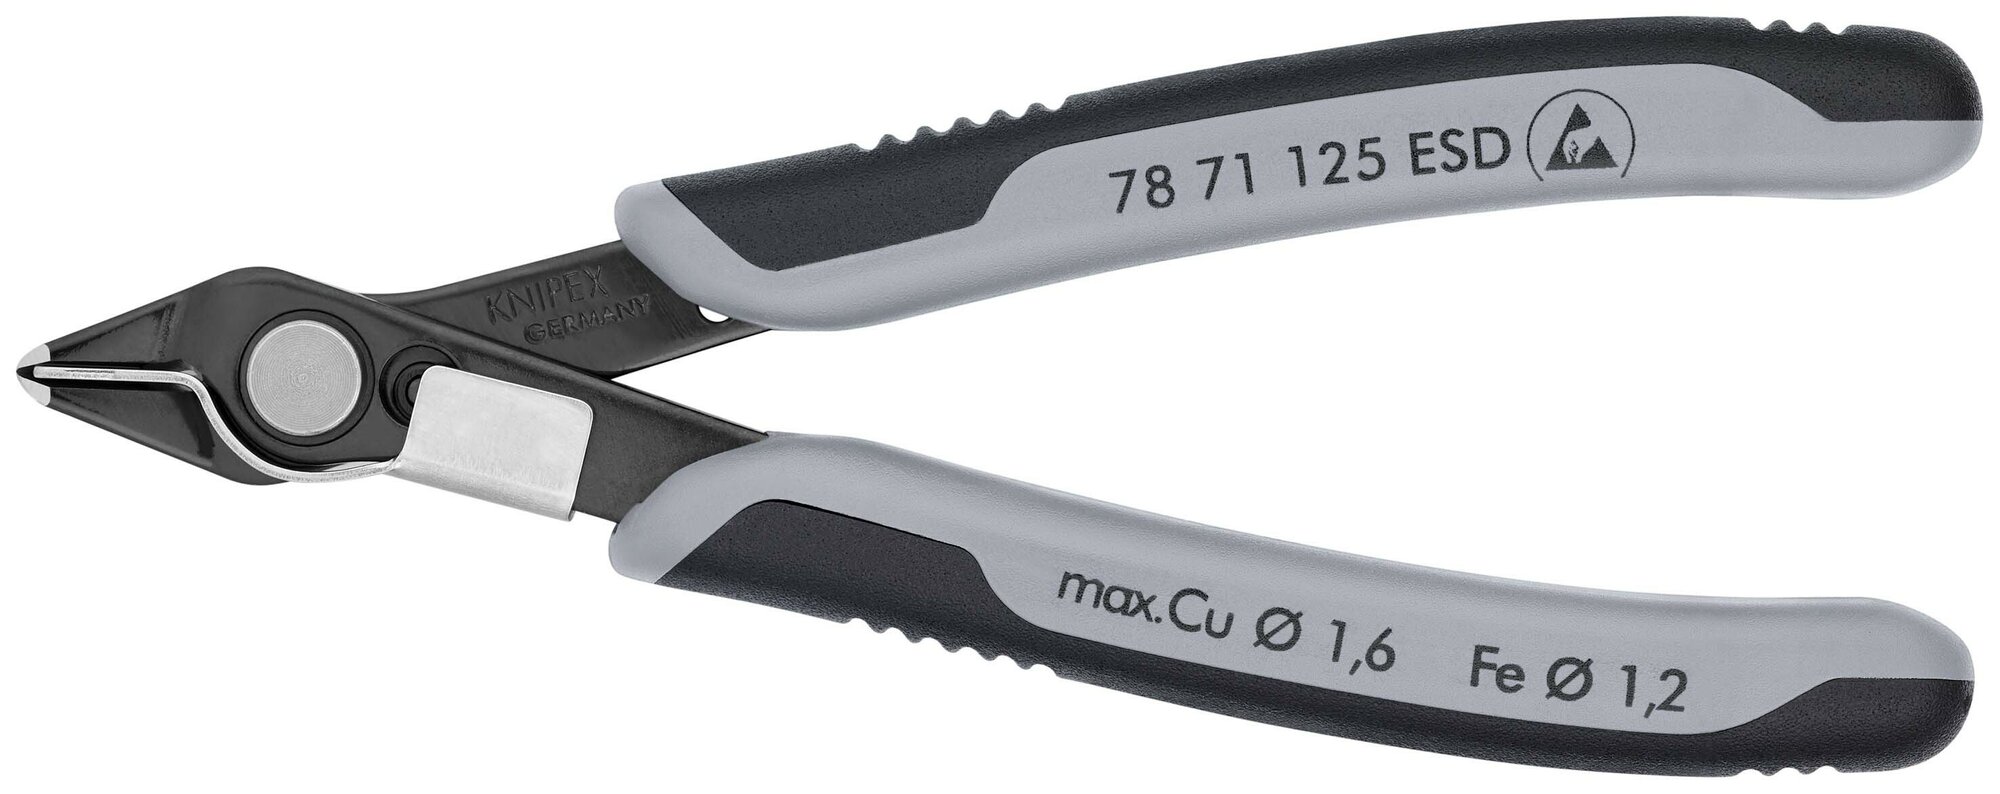 Бокорезы KNIPEX Electronic Super Knips прецизионные ESD, зажим для проволоки, нерж, 125 мм, 2-комп антистатические ручки KN-7871125ESD